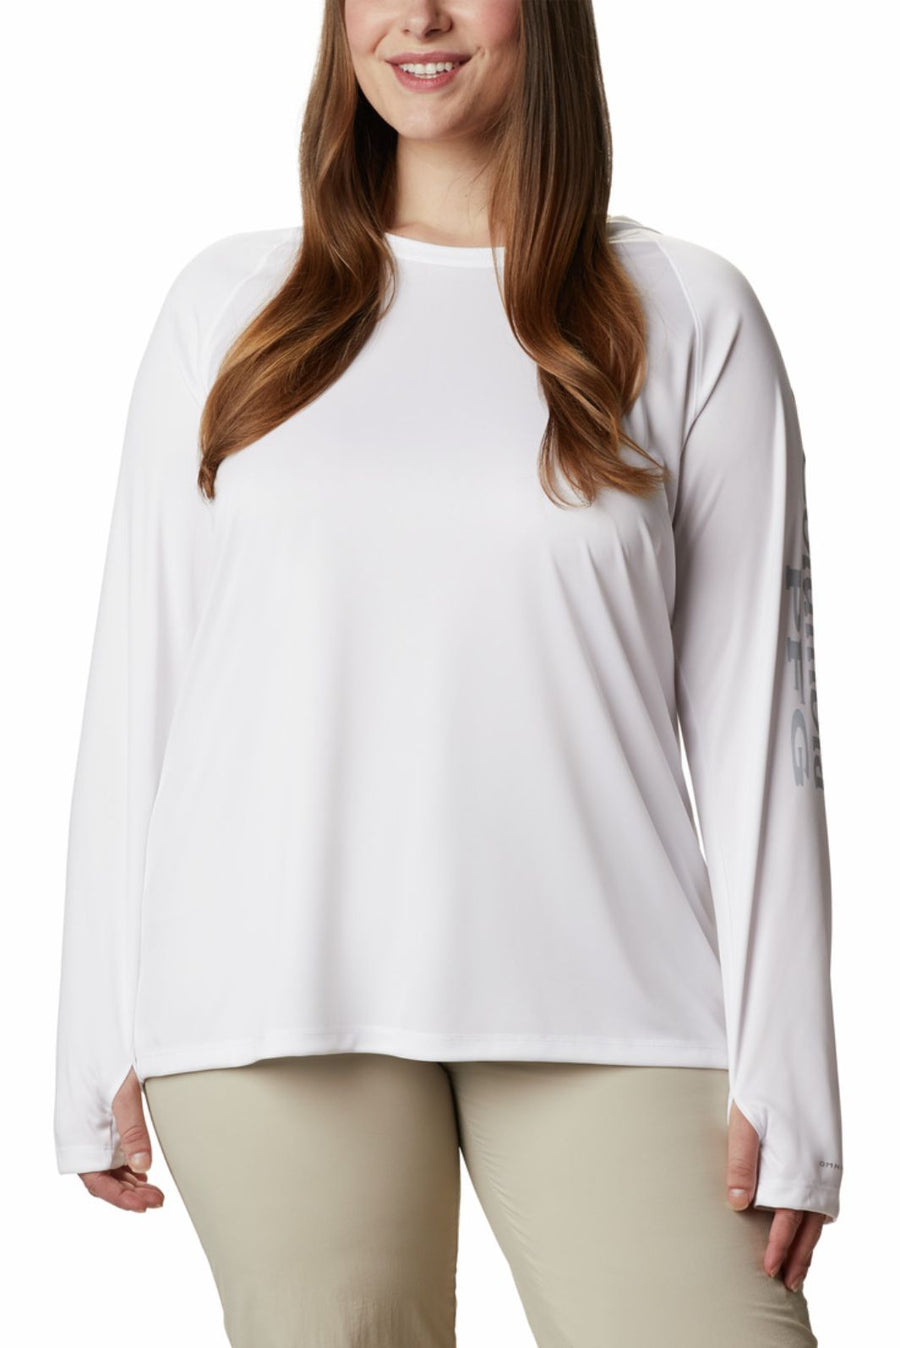 Vêtements de protection solaire d'été pour femmes, manteau mince  décontracté (couleur: blanc taille: XXL)